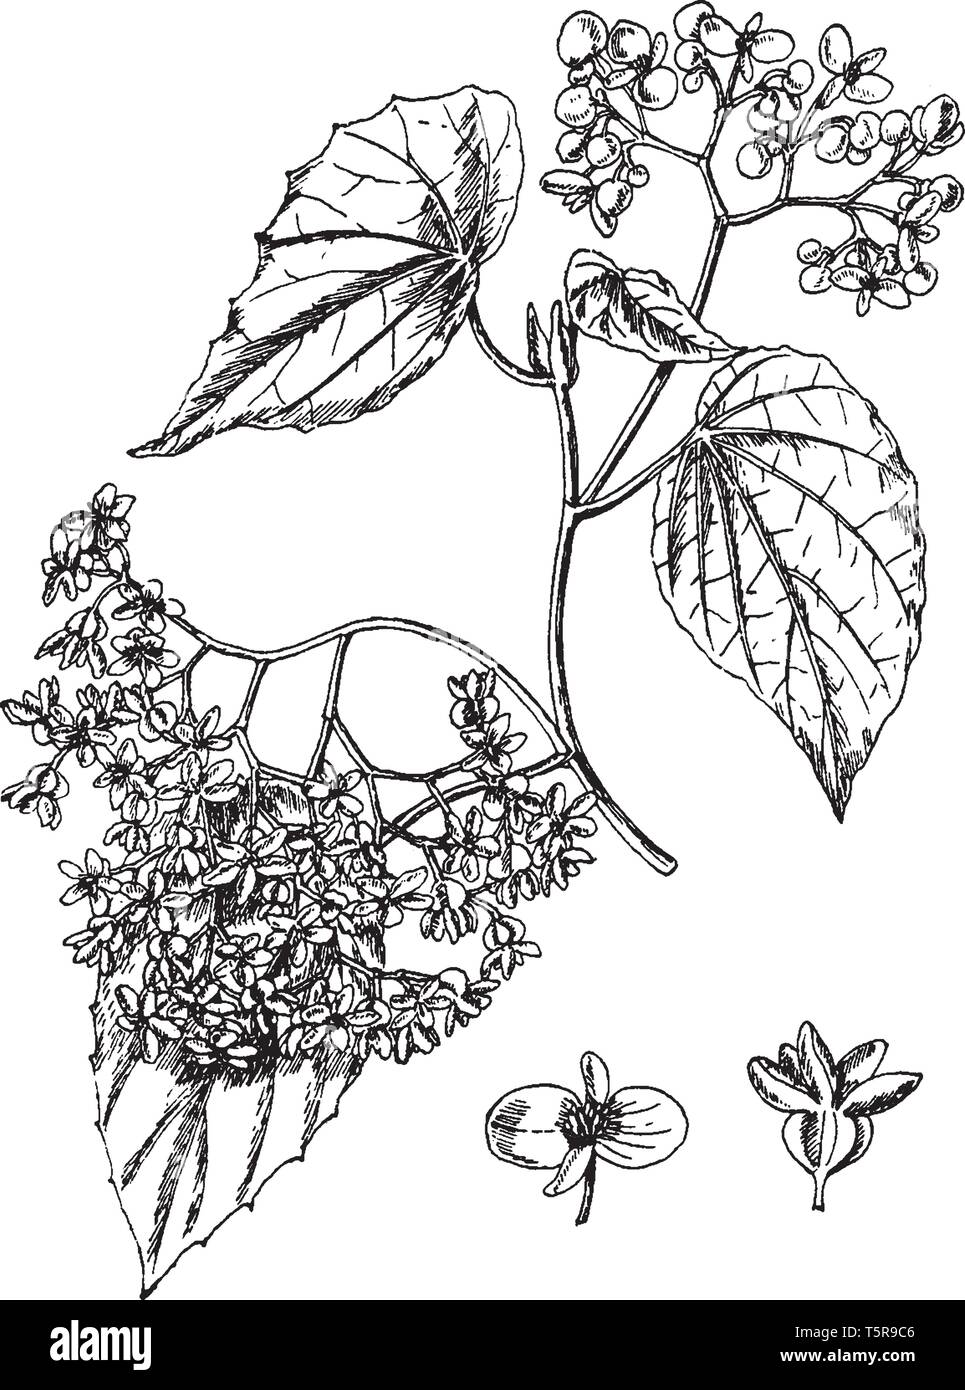 Le begonia Nitida les feuilles des plantes se présente comme forme du cœur.  La grappe de fleurs est incliné vers le bas, vintage dessin ou gravure  illustration Image Vectorielle Stock - Alamy